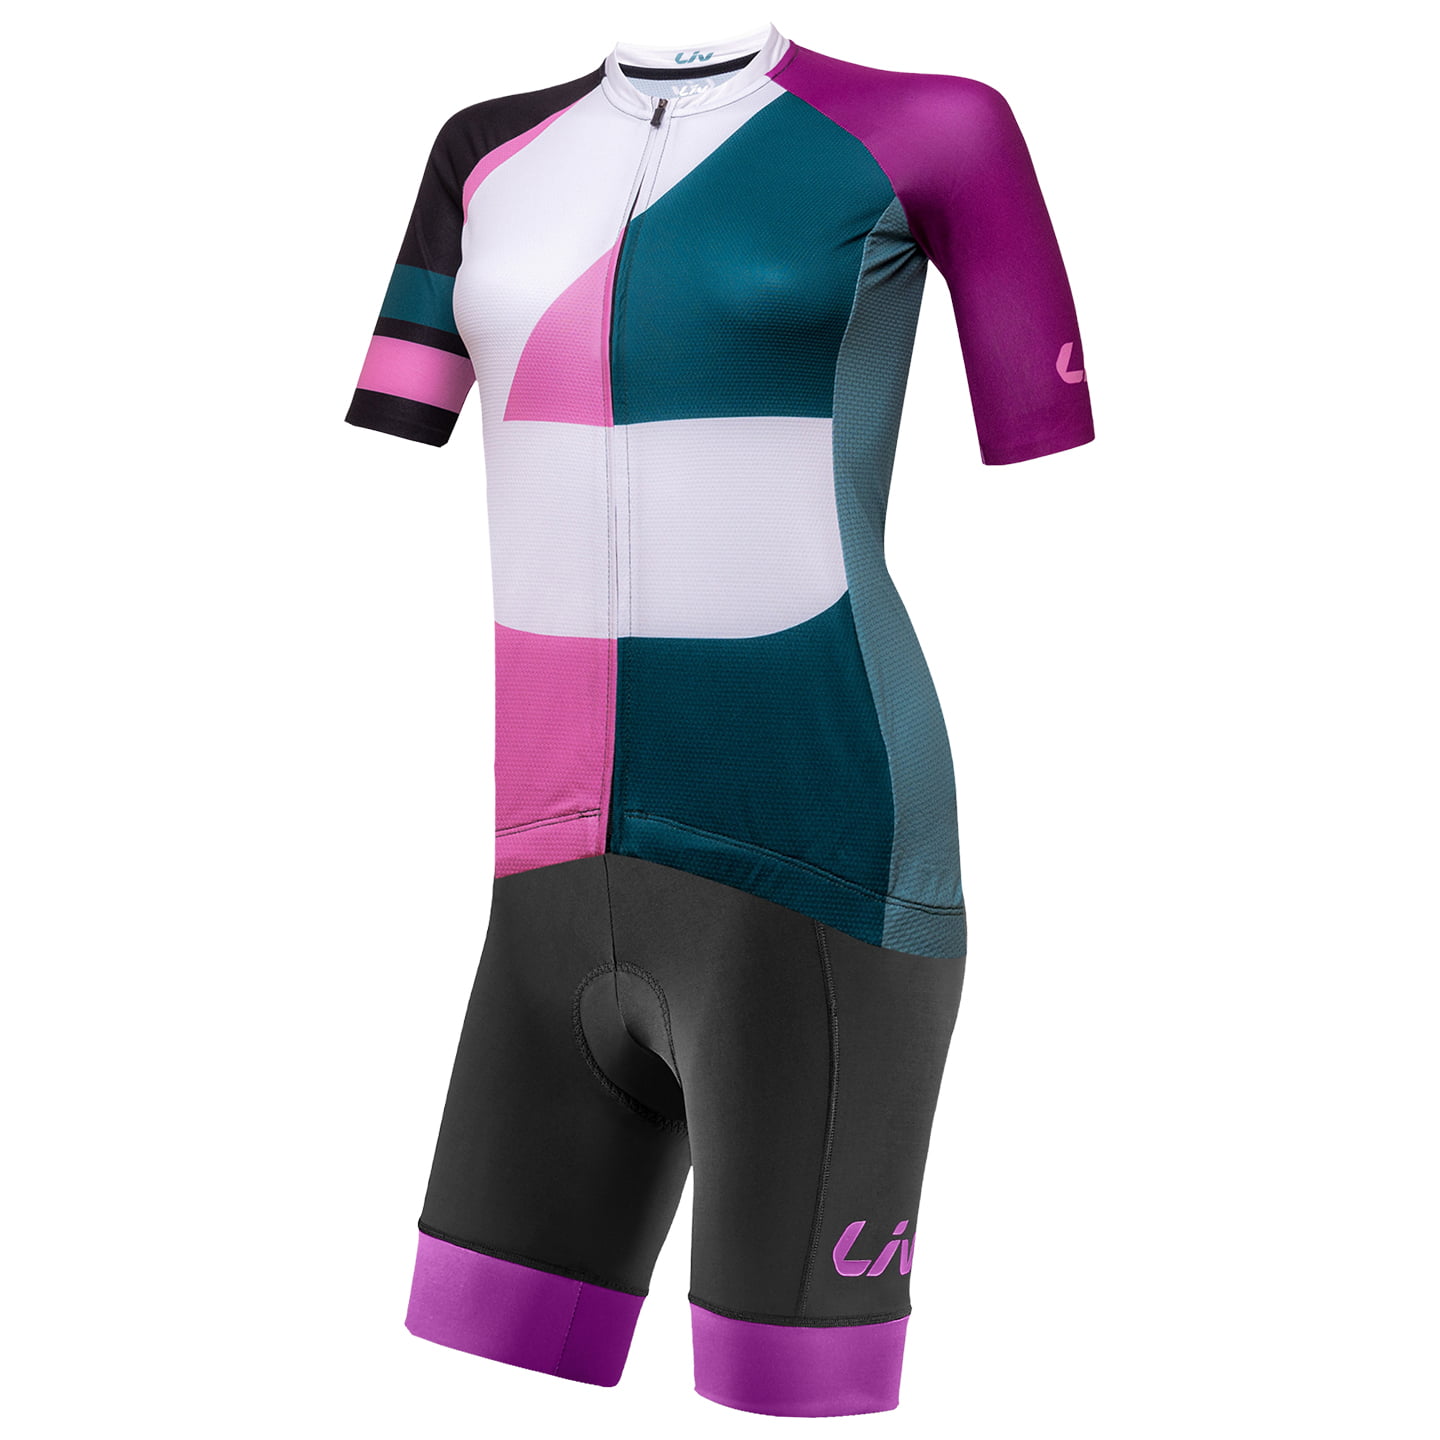 LIV Contour Women’s Set (cycling jersey + cycling shorts) Women’s Set (2 pieces), Cycling clothing